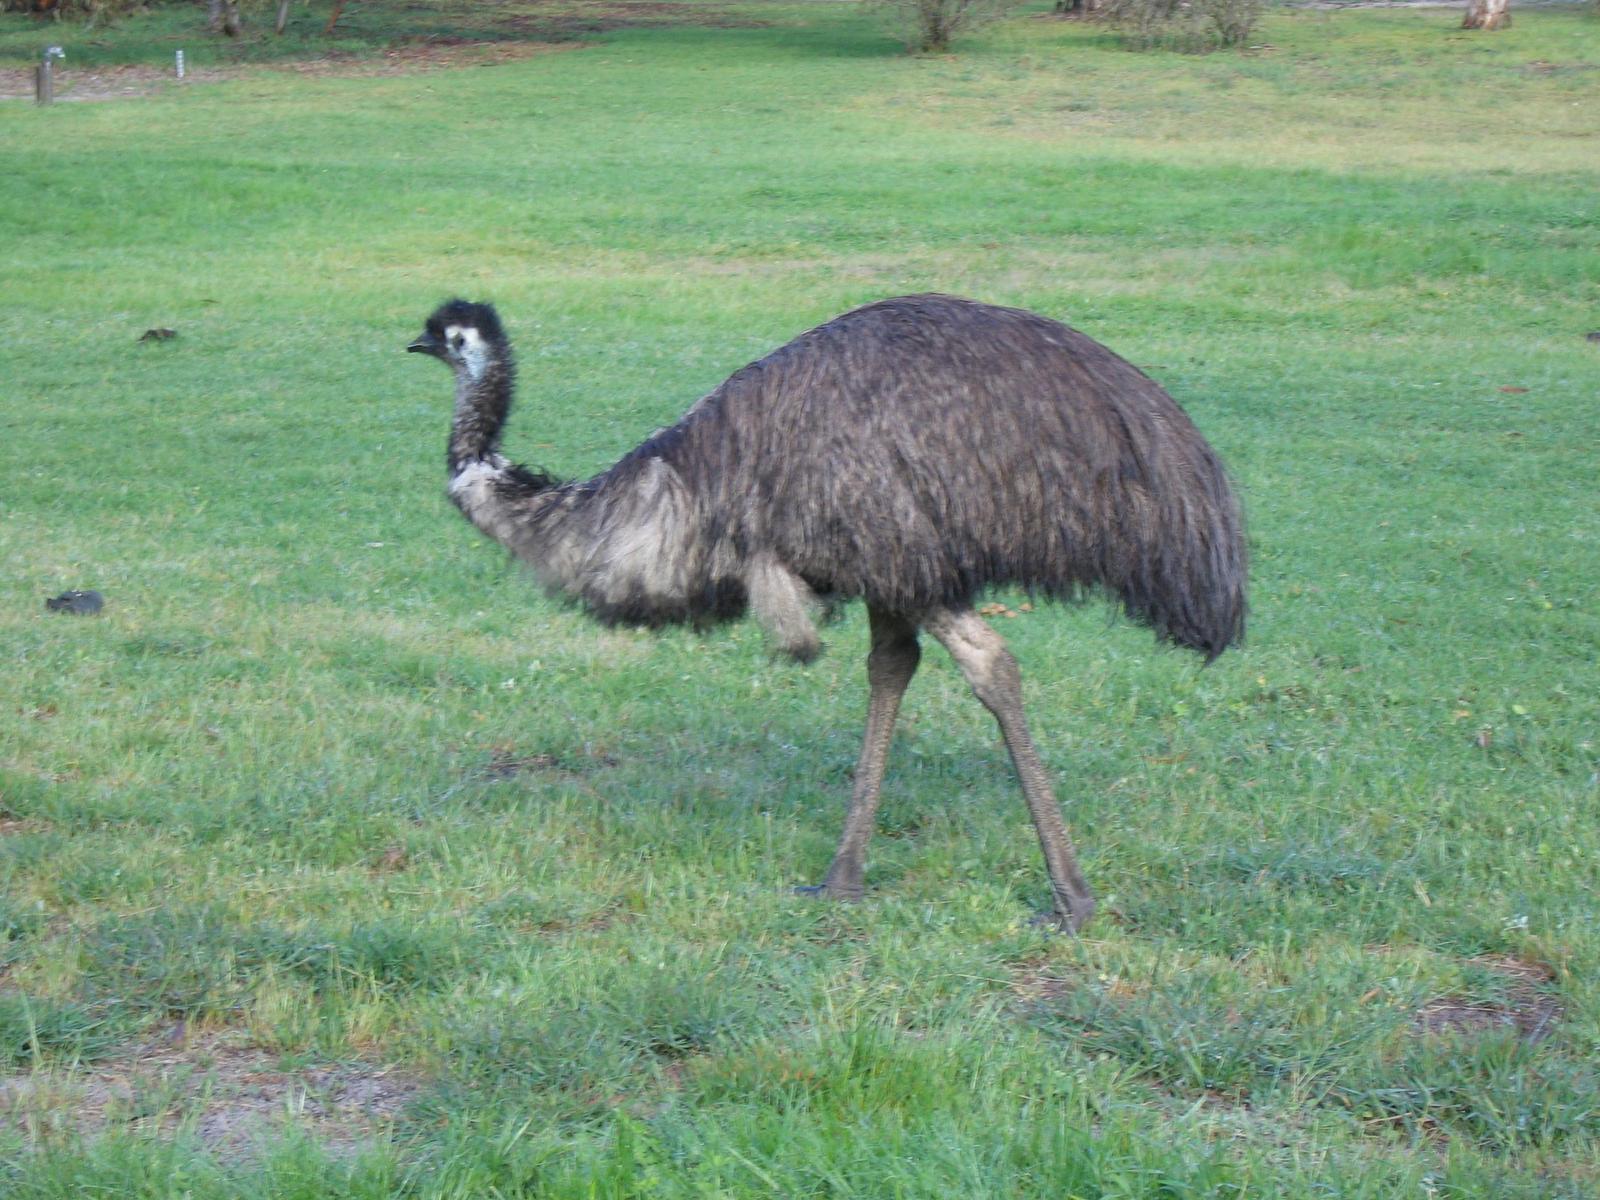 Emu Photo by Daliel Leite